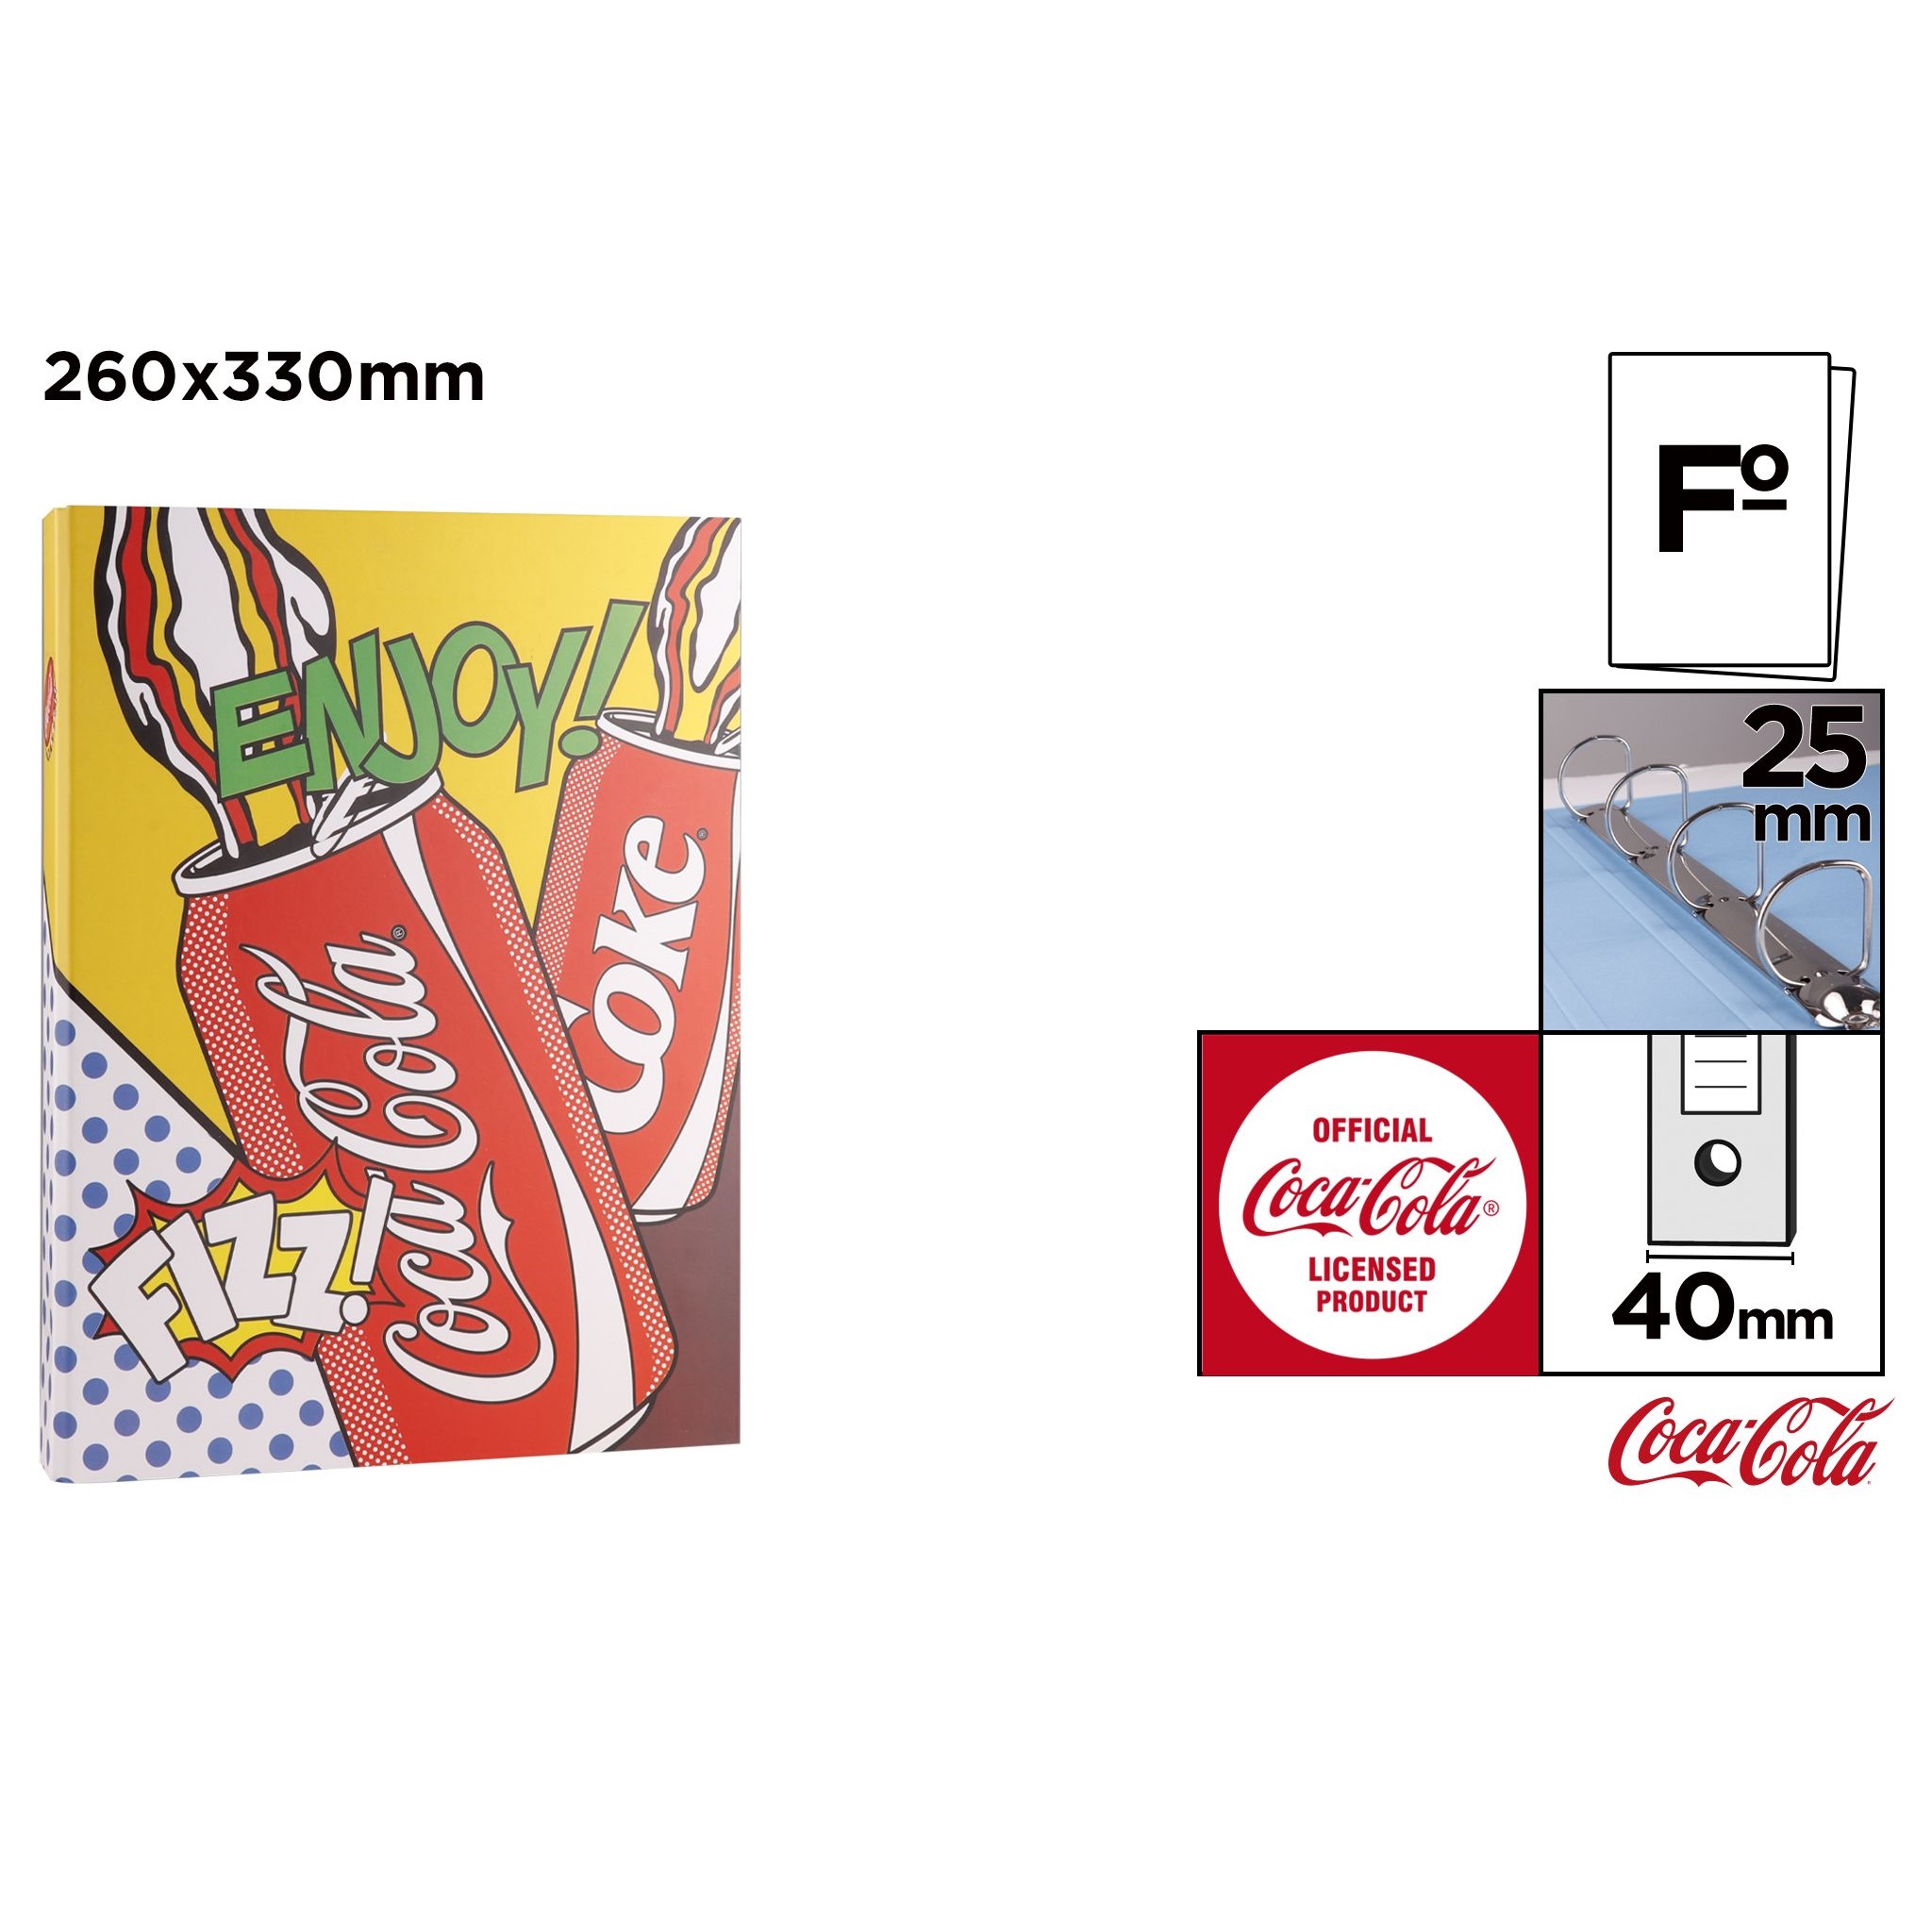 CC011 Coca-Cola Loose-leaf File Box Папка-арганізатар з дадзенымі Папка вялікай ёмістасці